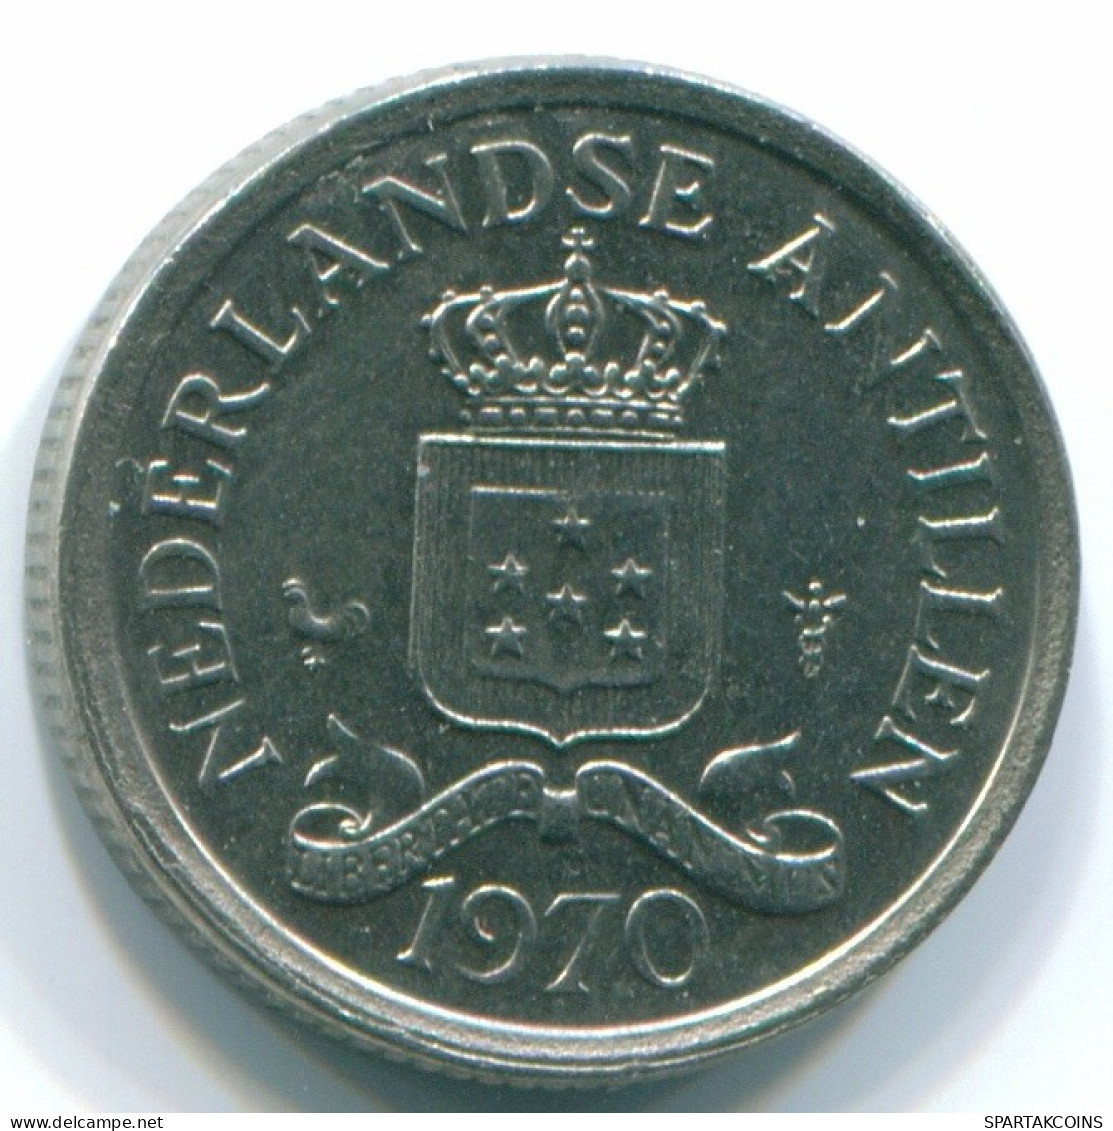 10 CENTS 1970 NIEDERLÄNDISCHE ANTILLEN Nickel Koloniale Münze #S13337.D.A - Antillas Neerlandesas